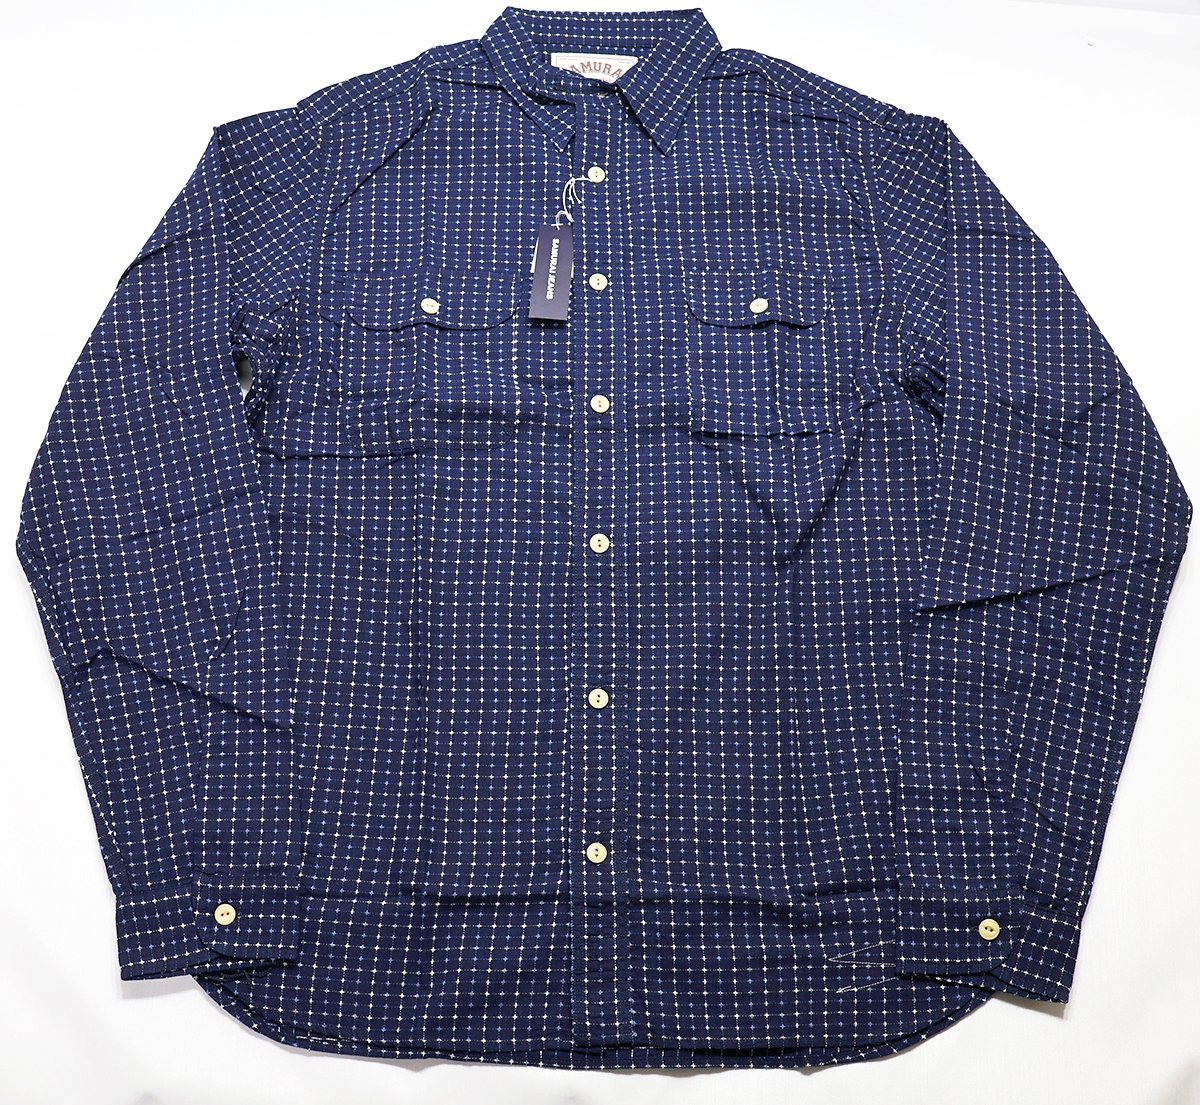 SAMURAI JEANS (サムライジーンズ) Sashiko Check Work Shirt / 刺し子チェックワークシャツ SSS17-L01 未使用品 インディゴ size XXL_画像1